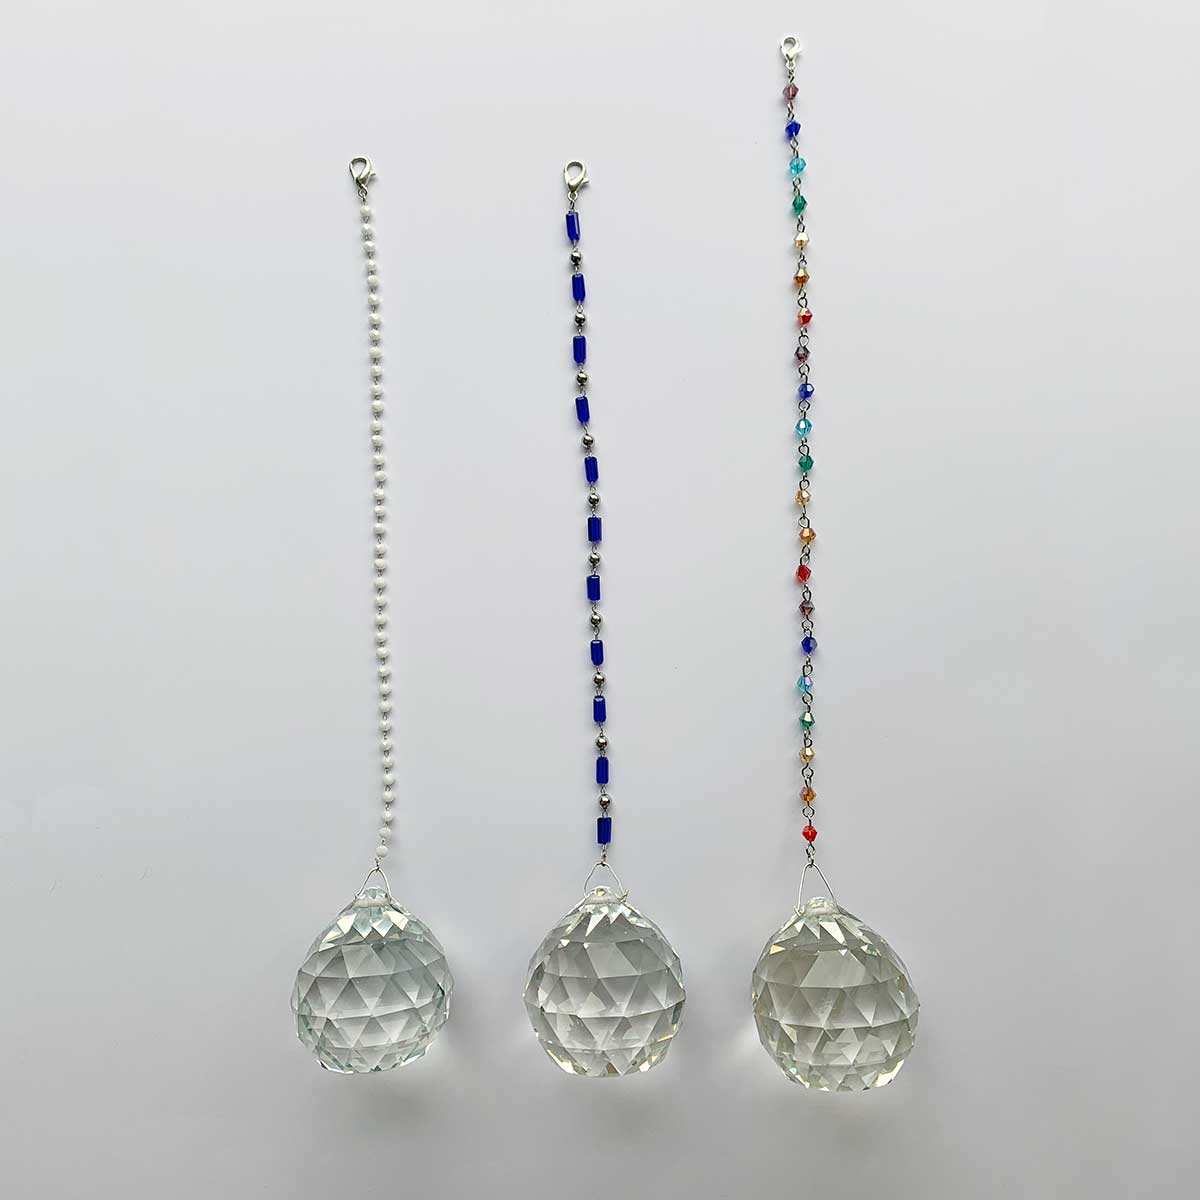 Cristal Feng Shui 100% cristal avec chaîne acier et perles bleues